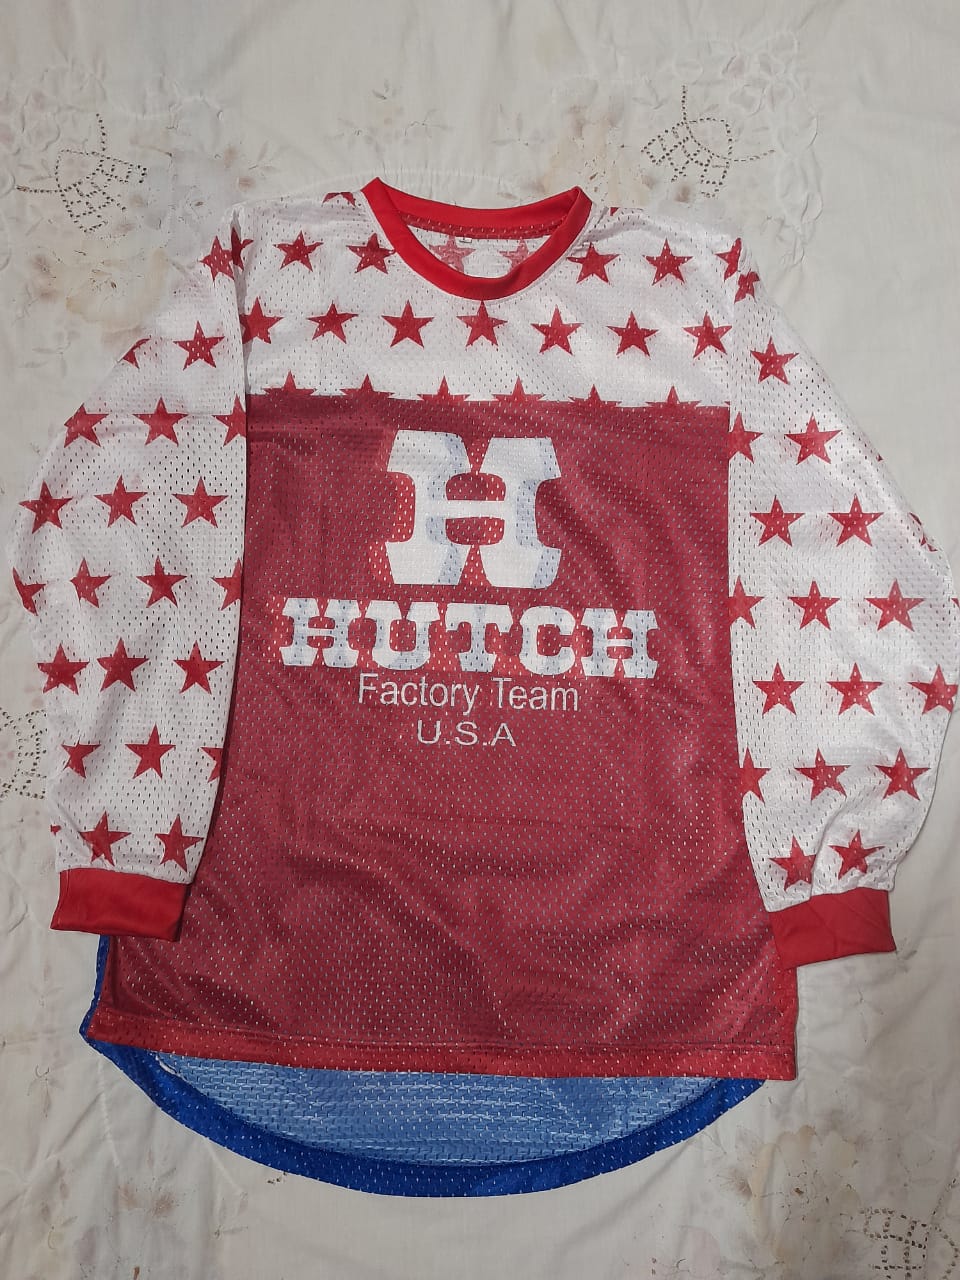 Hutch Vintage Bmx Jersey red/blue